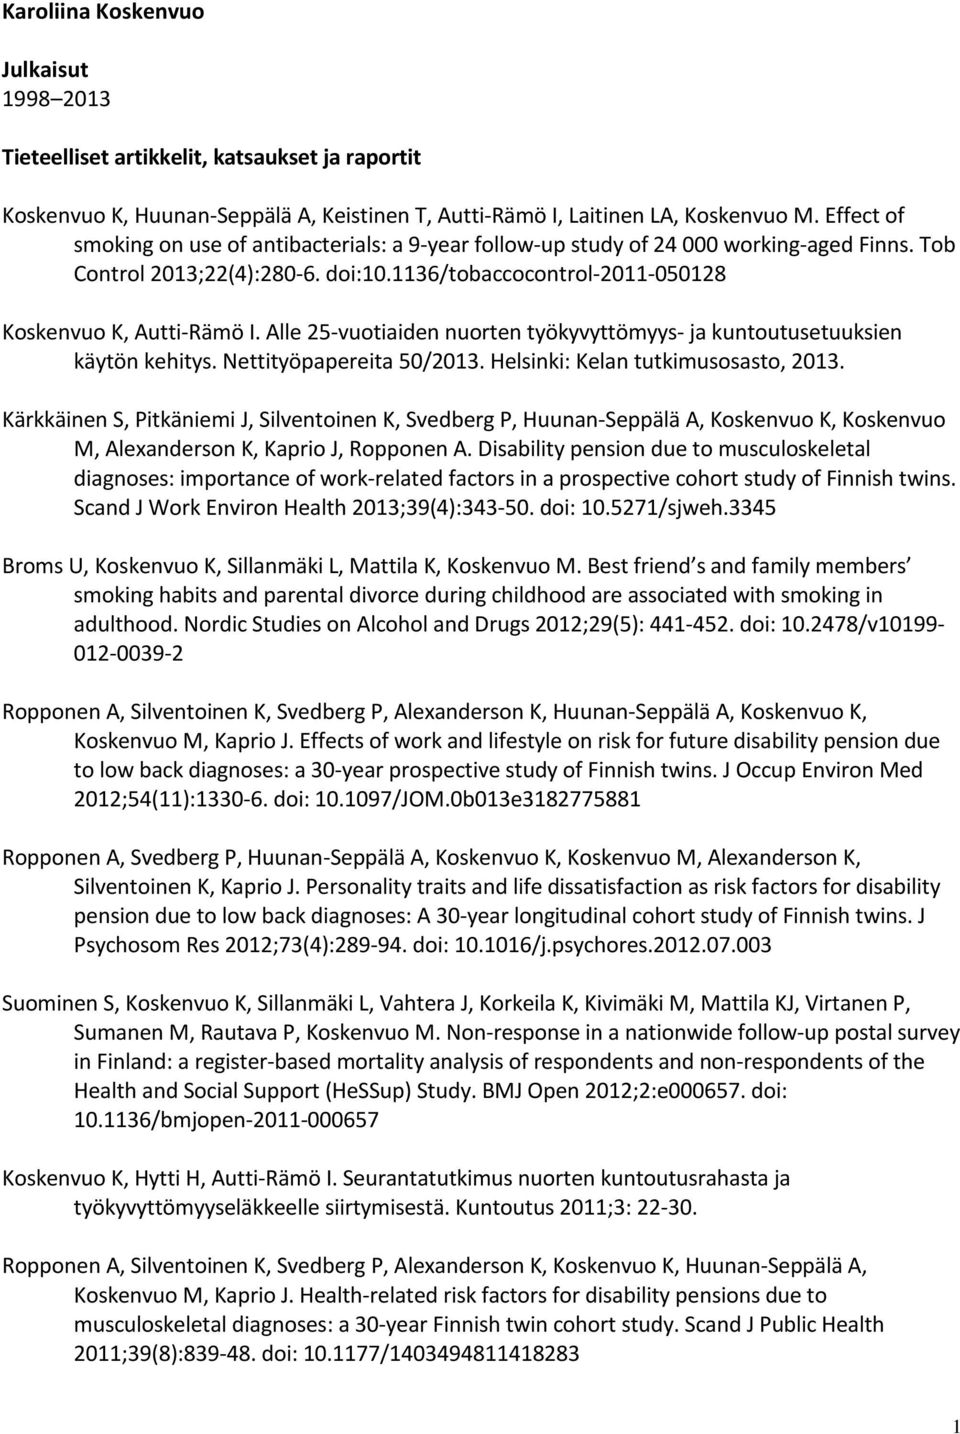 Alle 25-vuotiaiden nuorten työkyvyttömyys- ja kuntoutusetuuksien käytön kehitys. Nettityöpapereita 50/2013. Helsinki: Kelan tutkimusosasto, 2013.